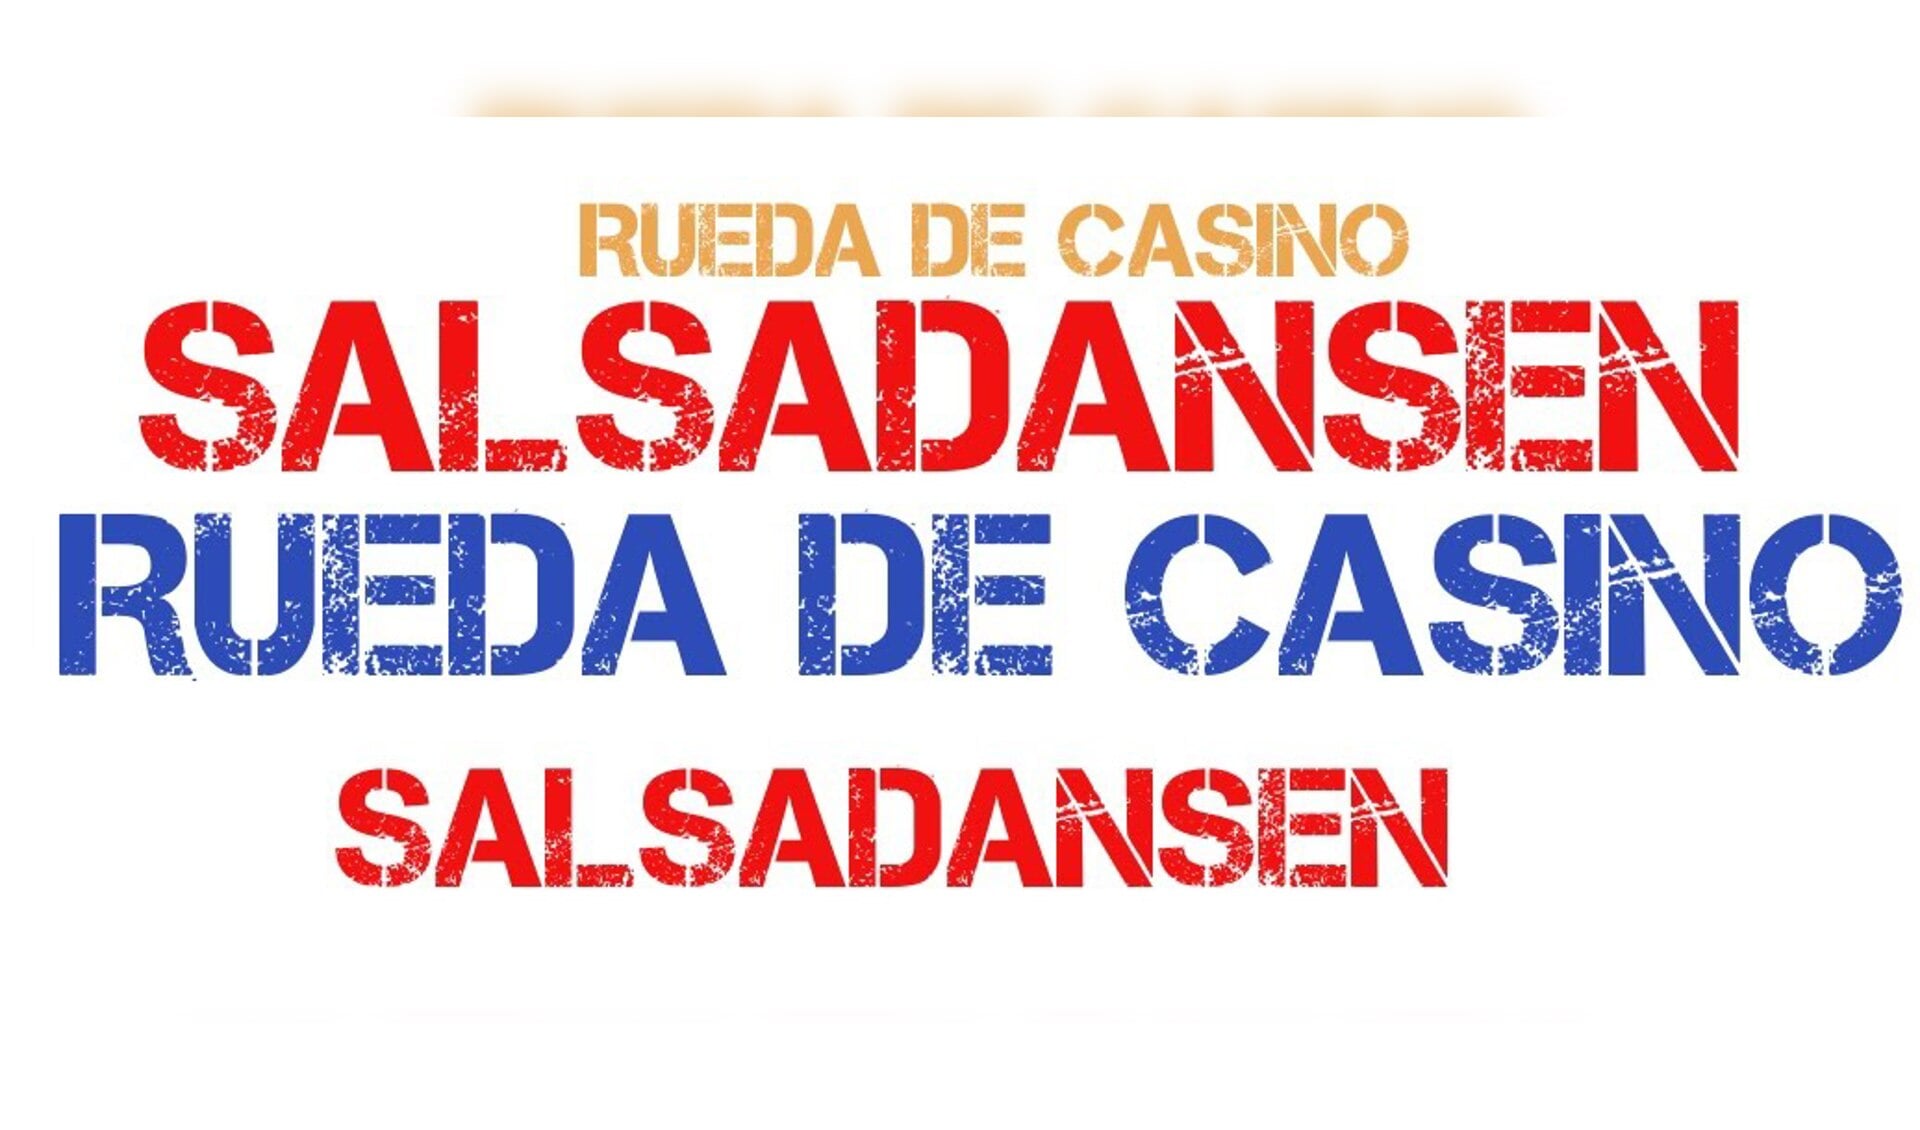 Cubaans Salsadansen in Rueda de Casino